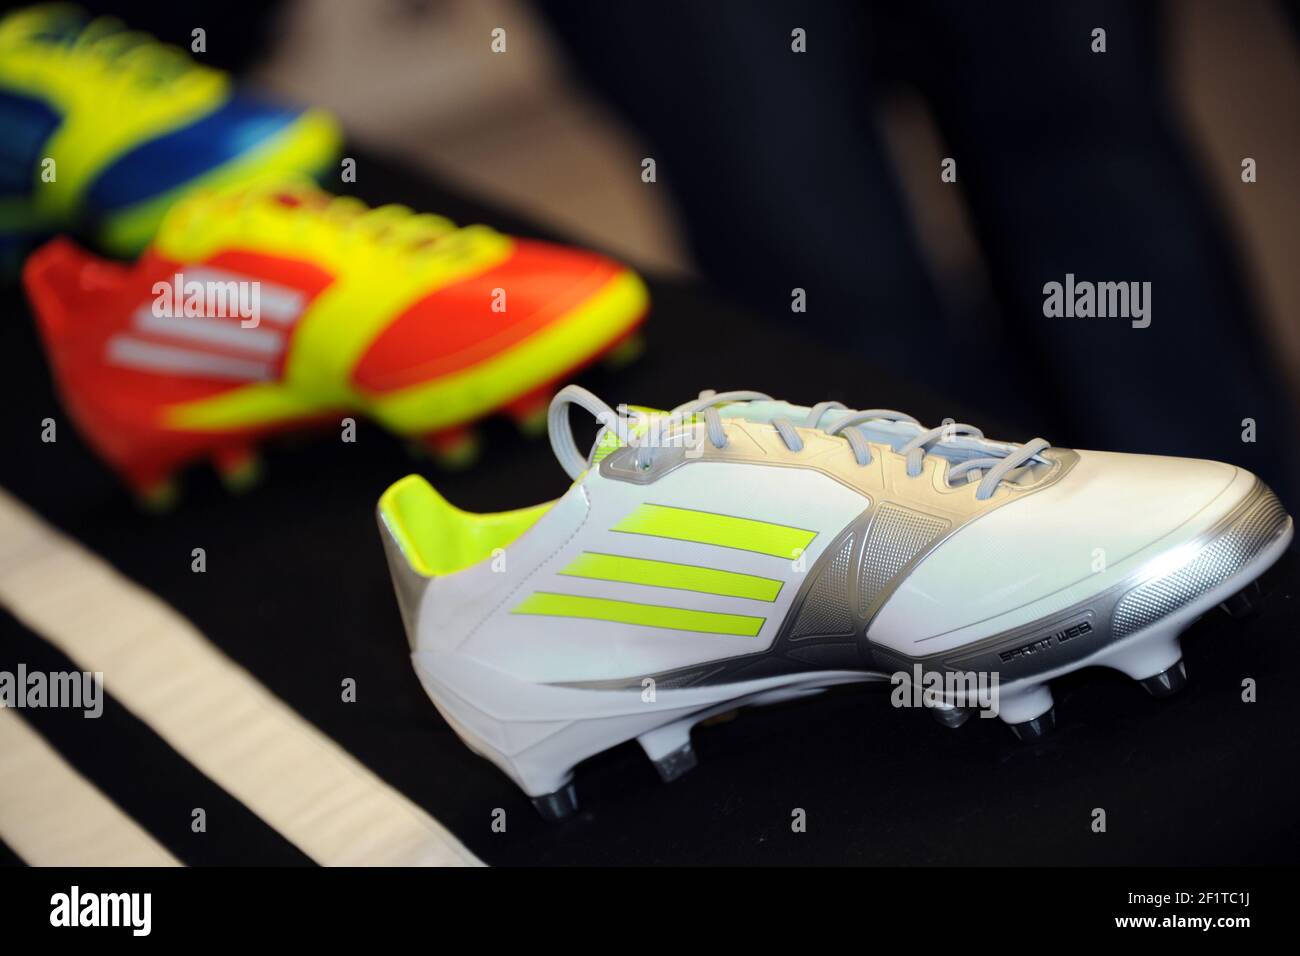 Adidas f50 -Fotos und -Bildmaterial in hoher Auflösung – Alamy